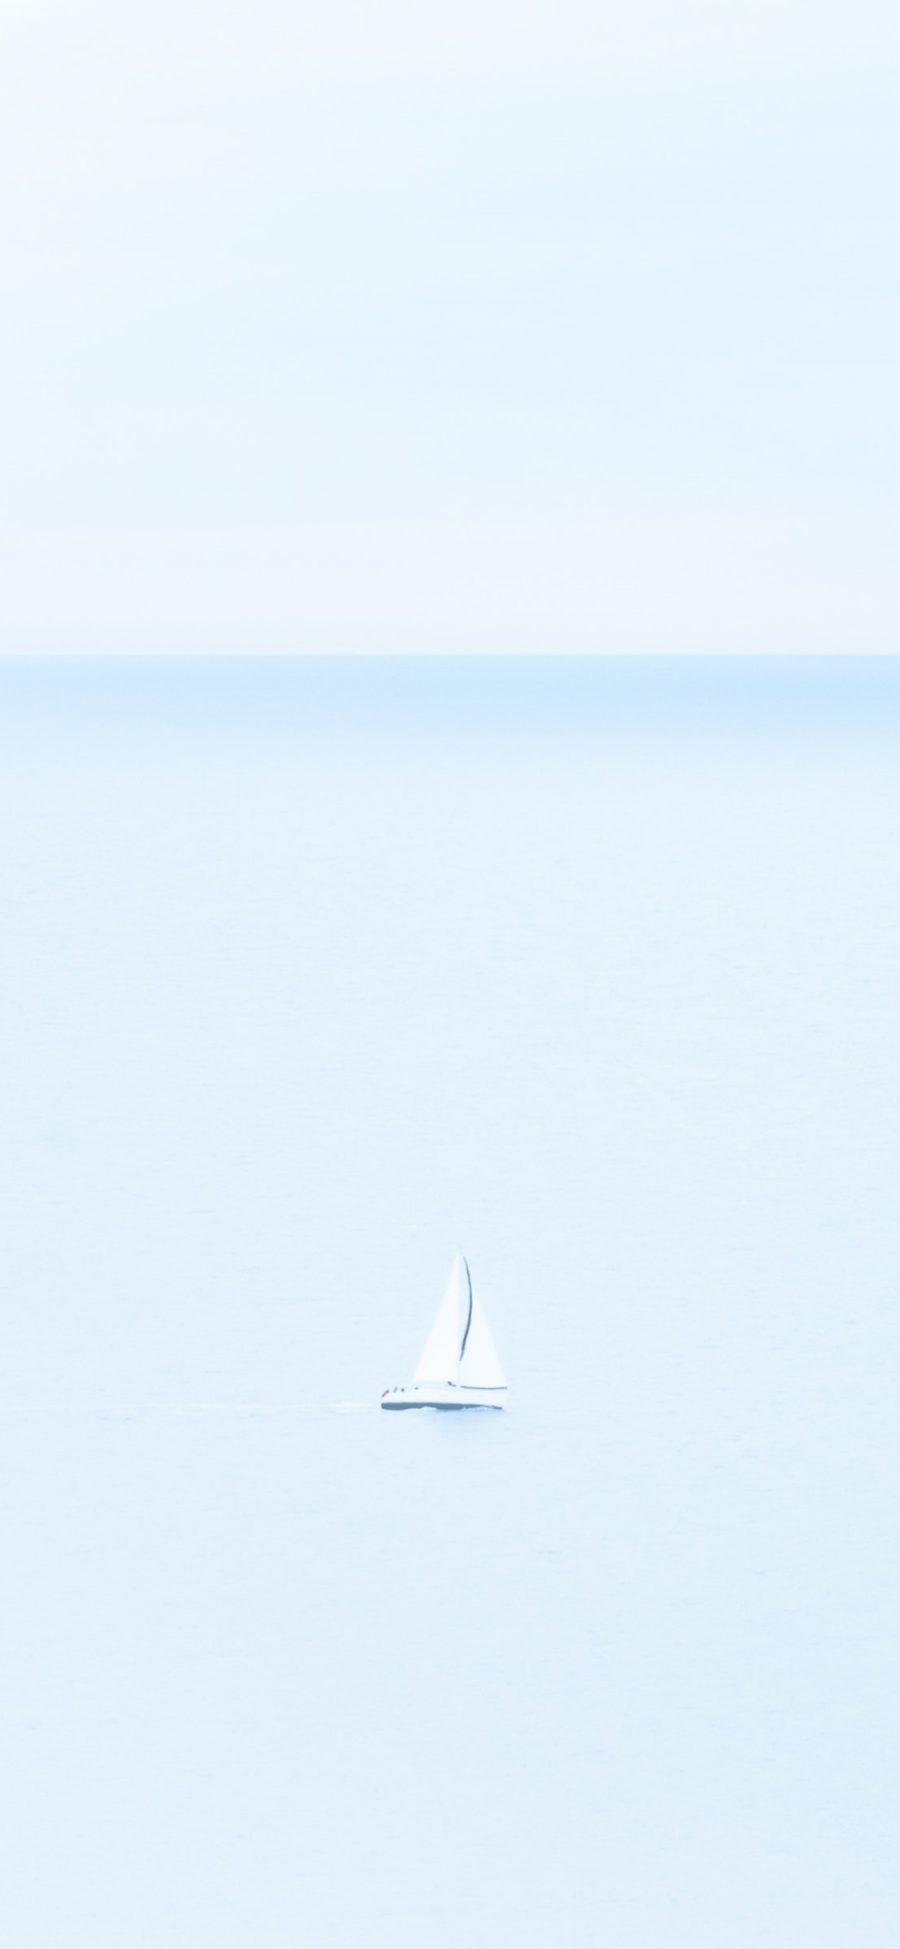 [2436×1125]帆船 大海 海面 简约 清新 苹果手机壁纸图片